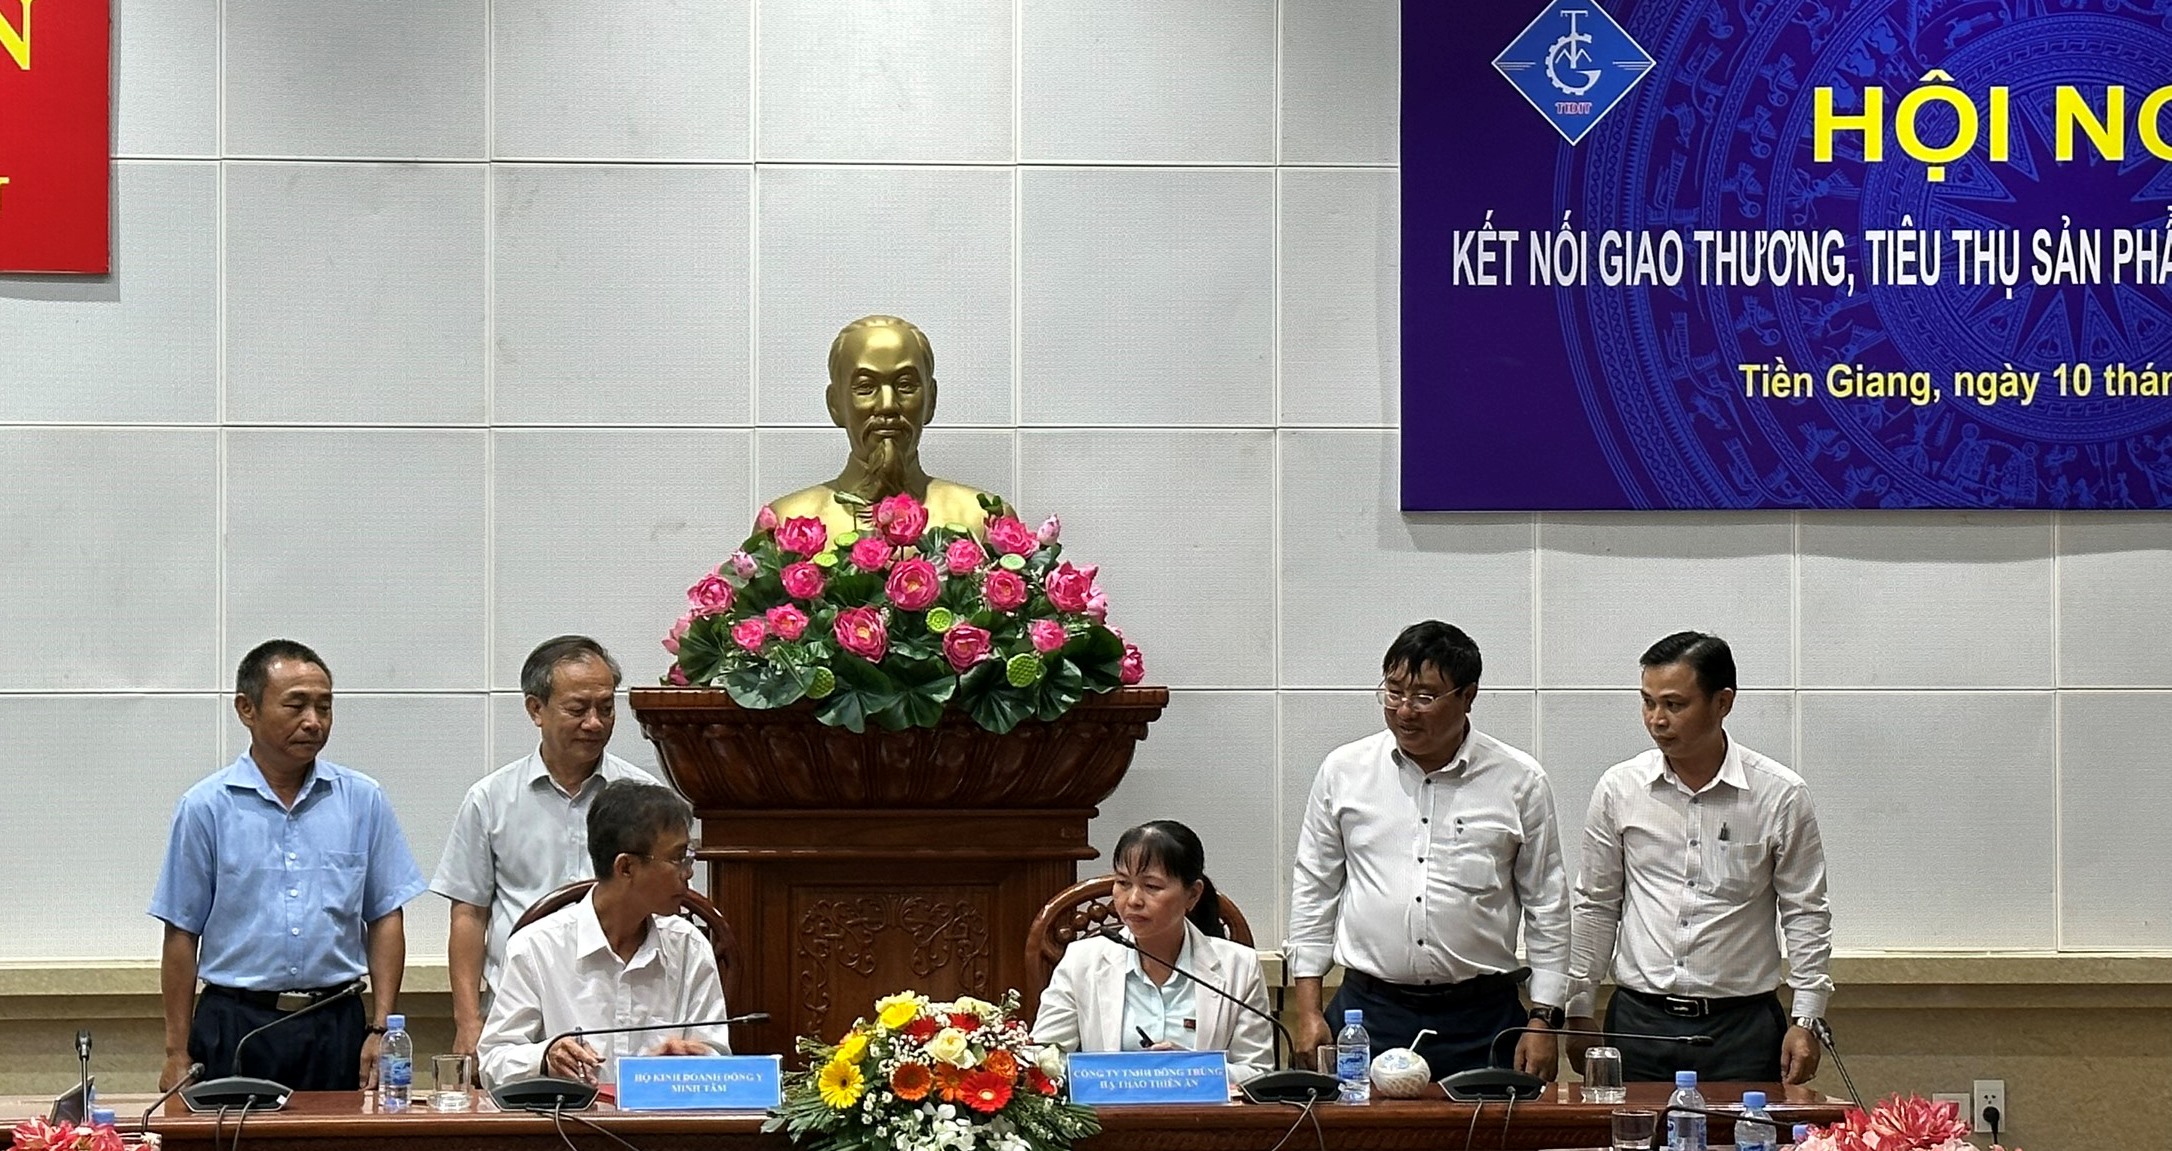 15 doanh nghiệp tỉnh Đắk Lắk quảng bá, kết nối giao thương tại Long An, Bến Tre và Tiền Giang.